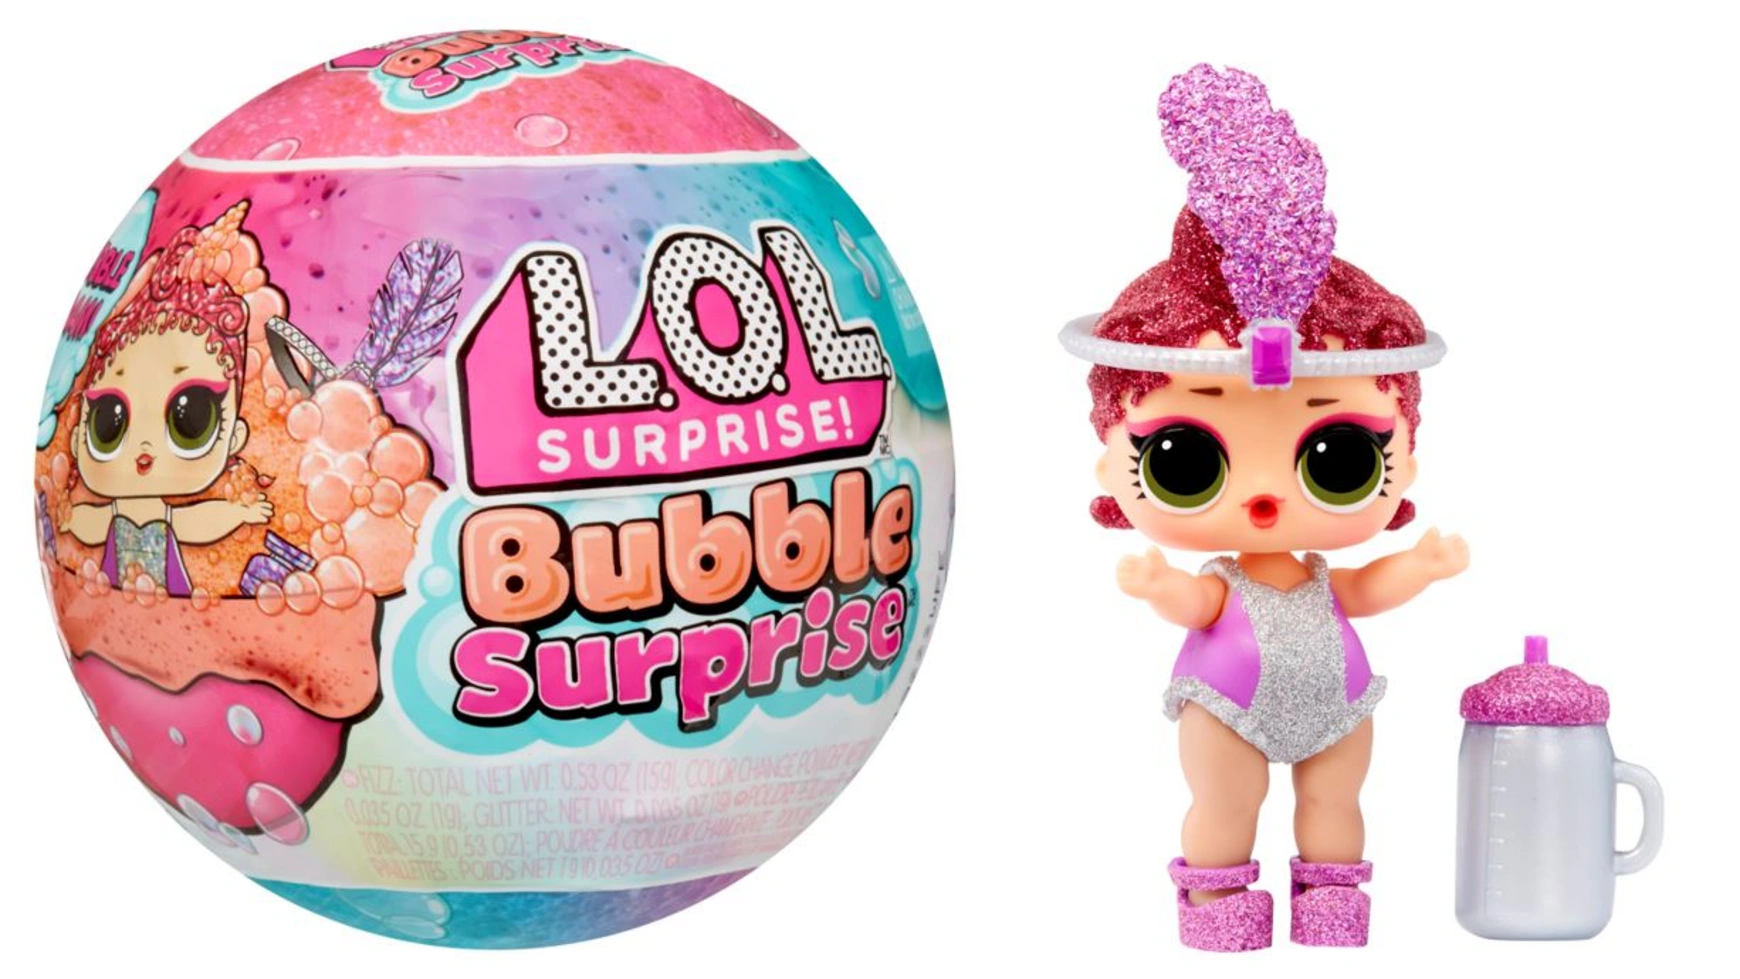 цена Кукла surprise bubble surprise, в ассортименте, 1 шт Lol Surprise